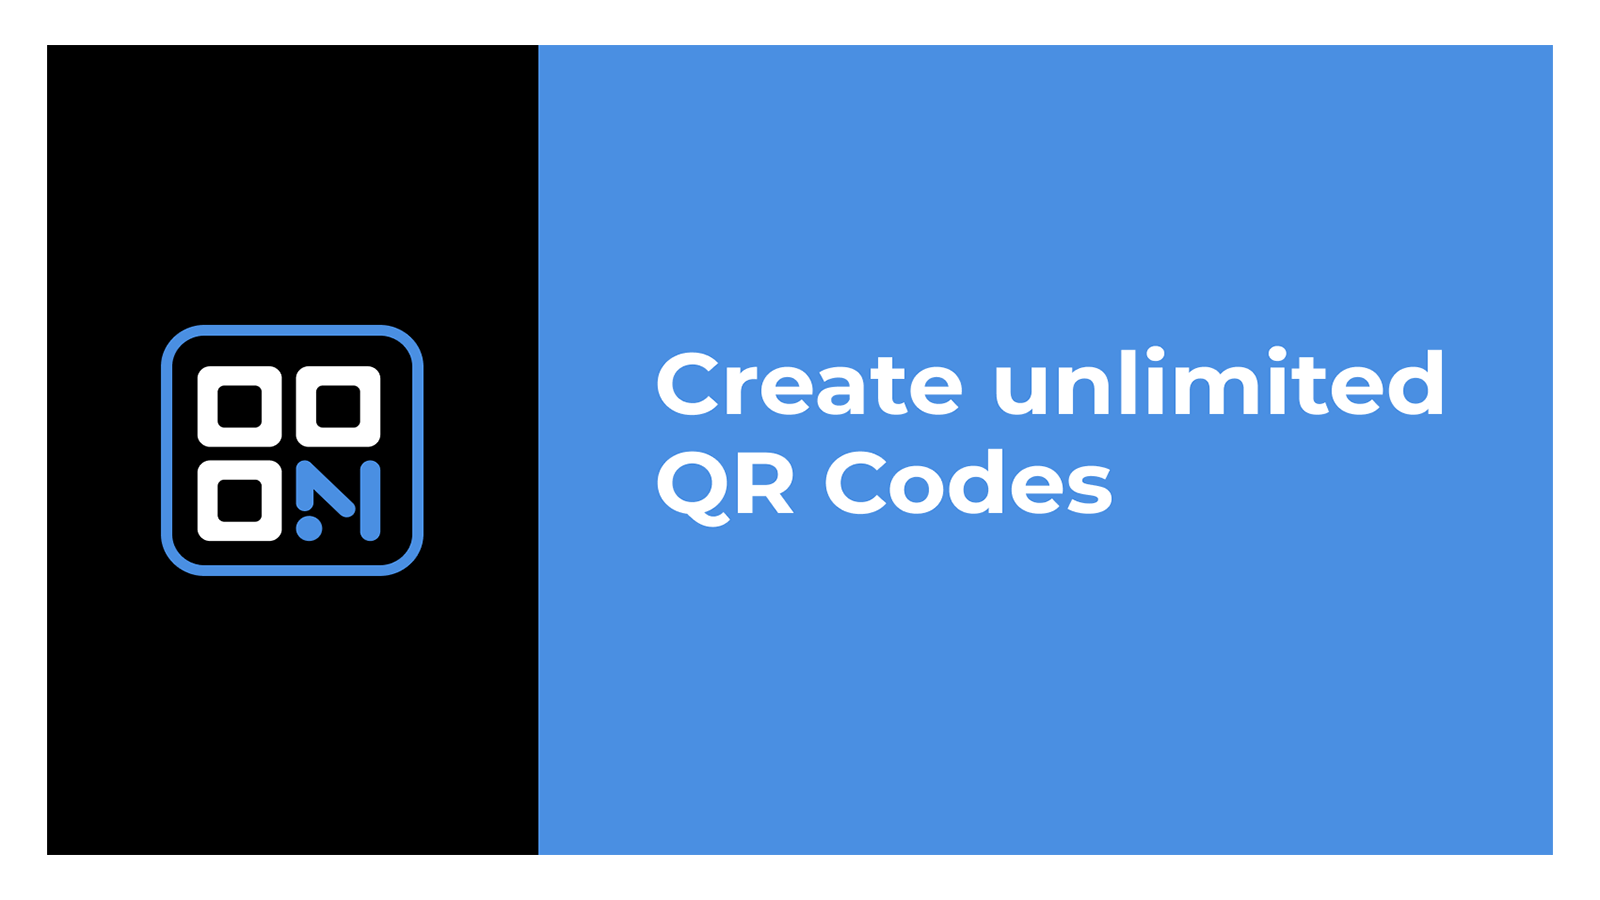 Créez des codes QR illimités